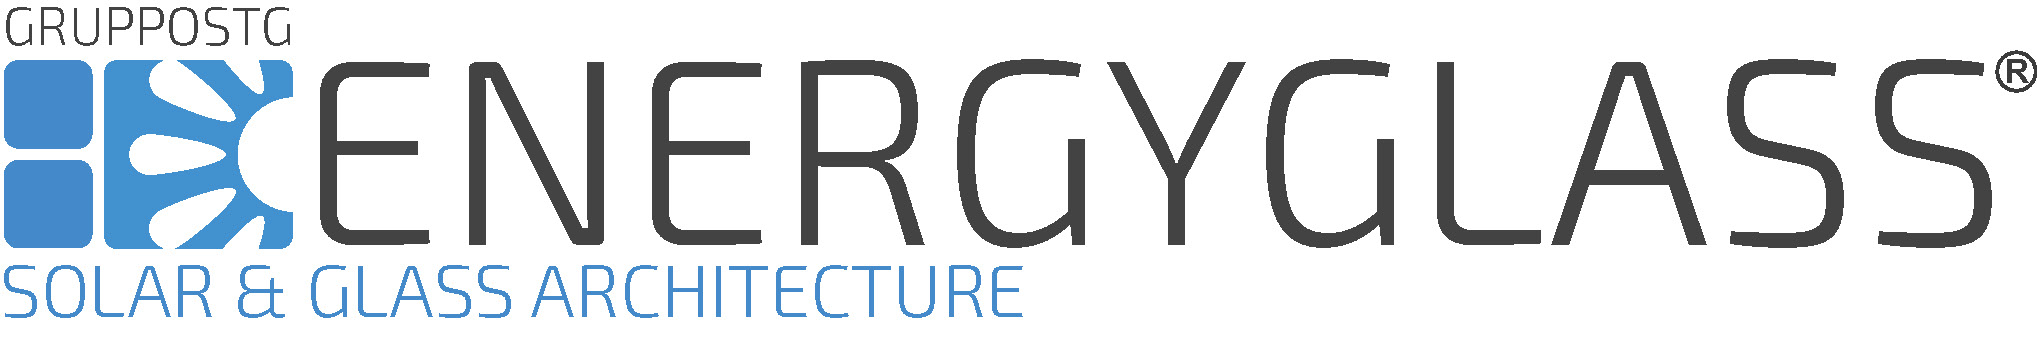 energyglass logo